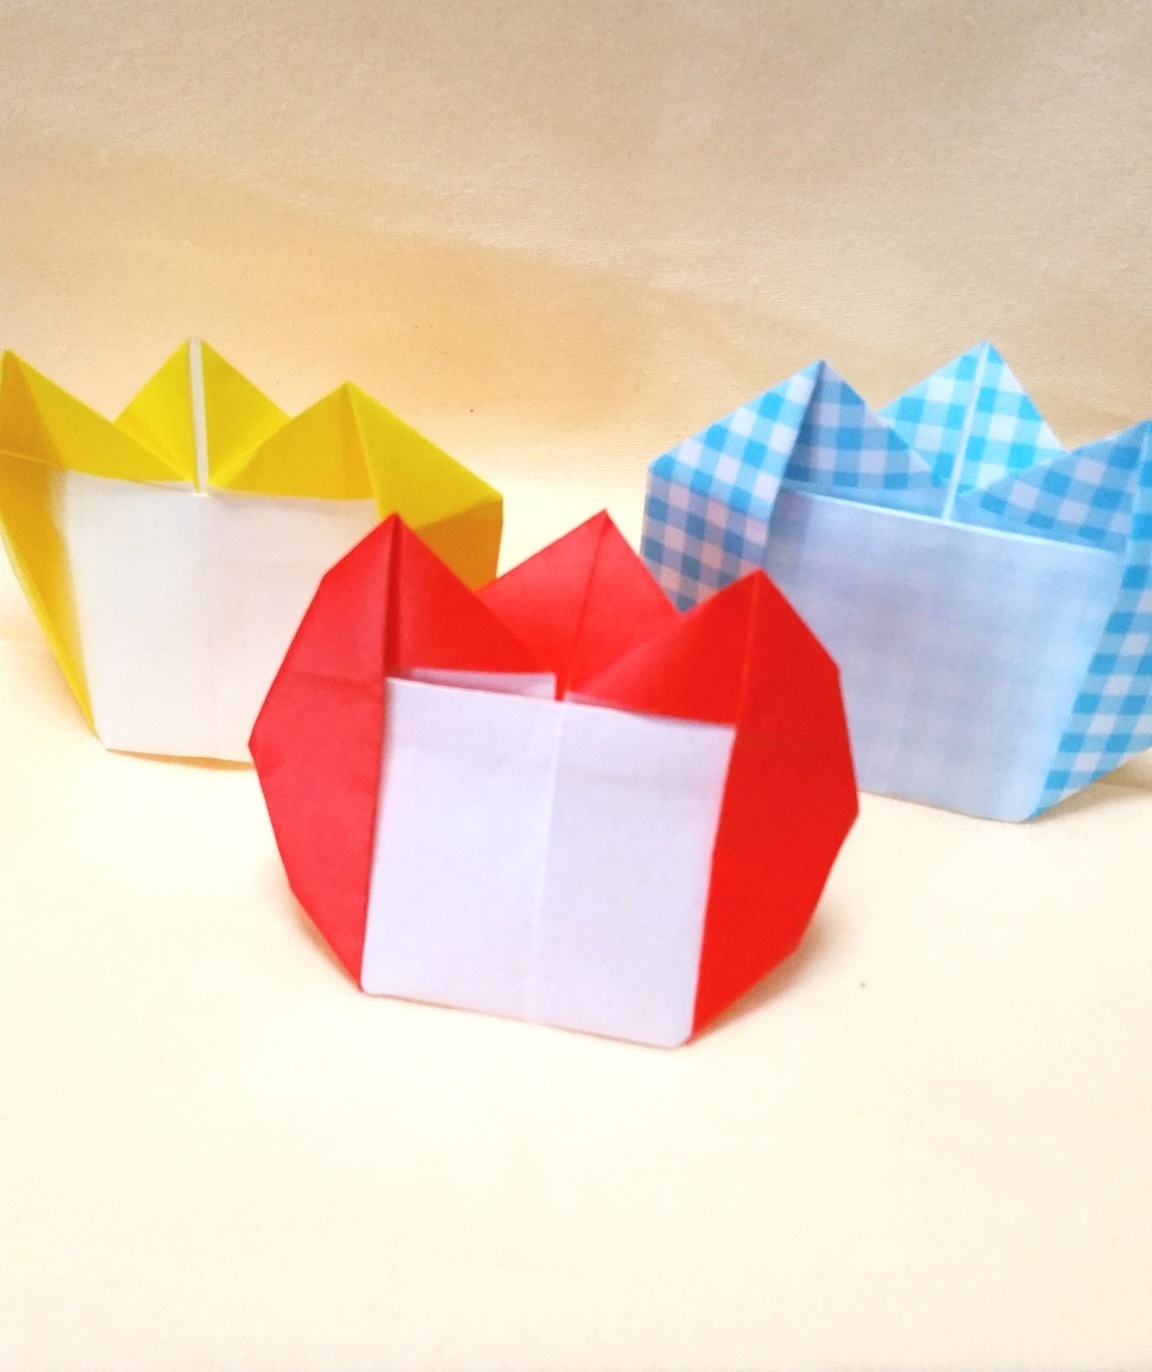 チューリップの作り方 簡単まとめ 立体 平面 折り紙 画用紙 ぽぴあコレクション